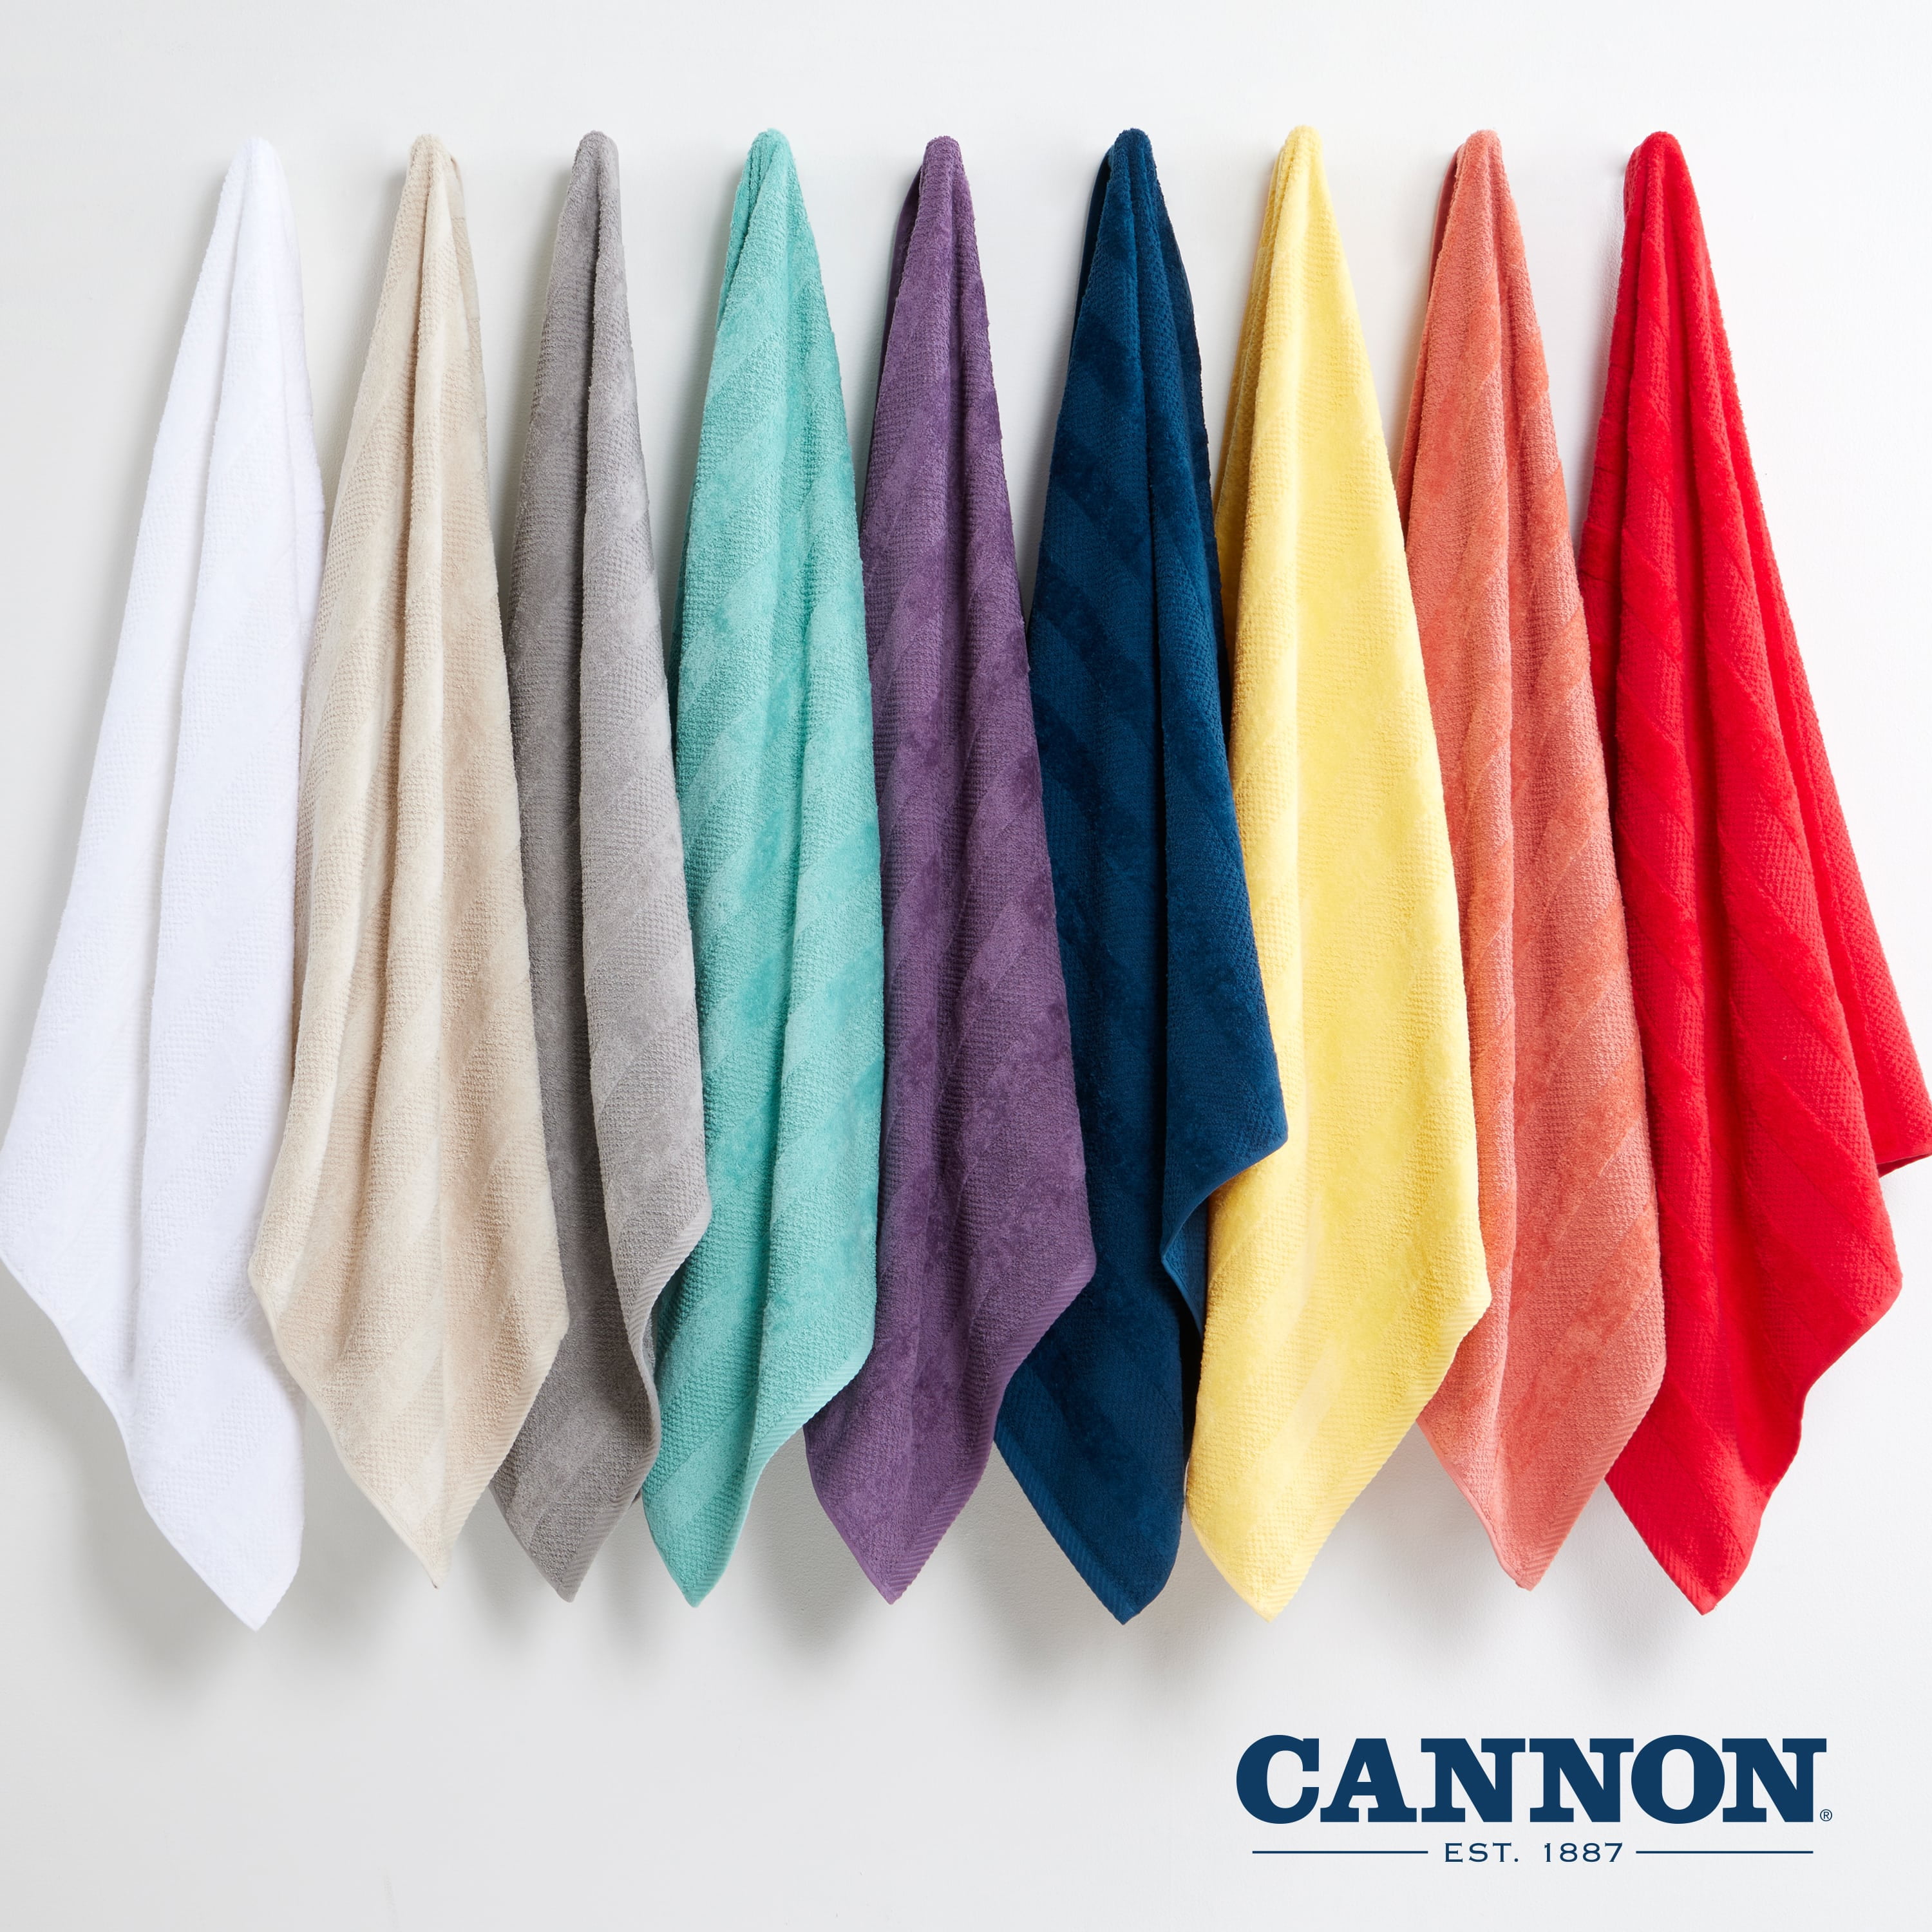 Cannon 6pk Quick Dry Bath Towel Set White - Cannon